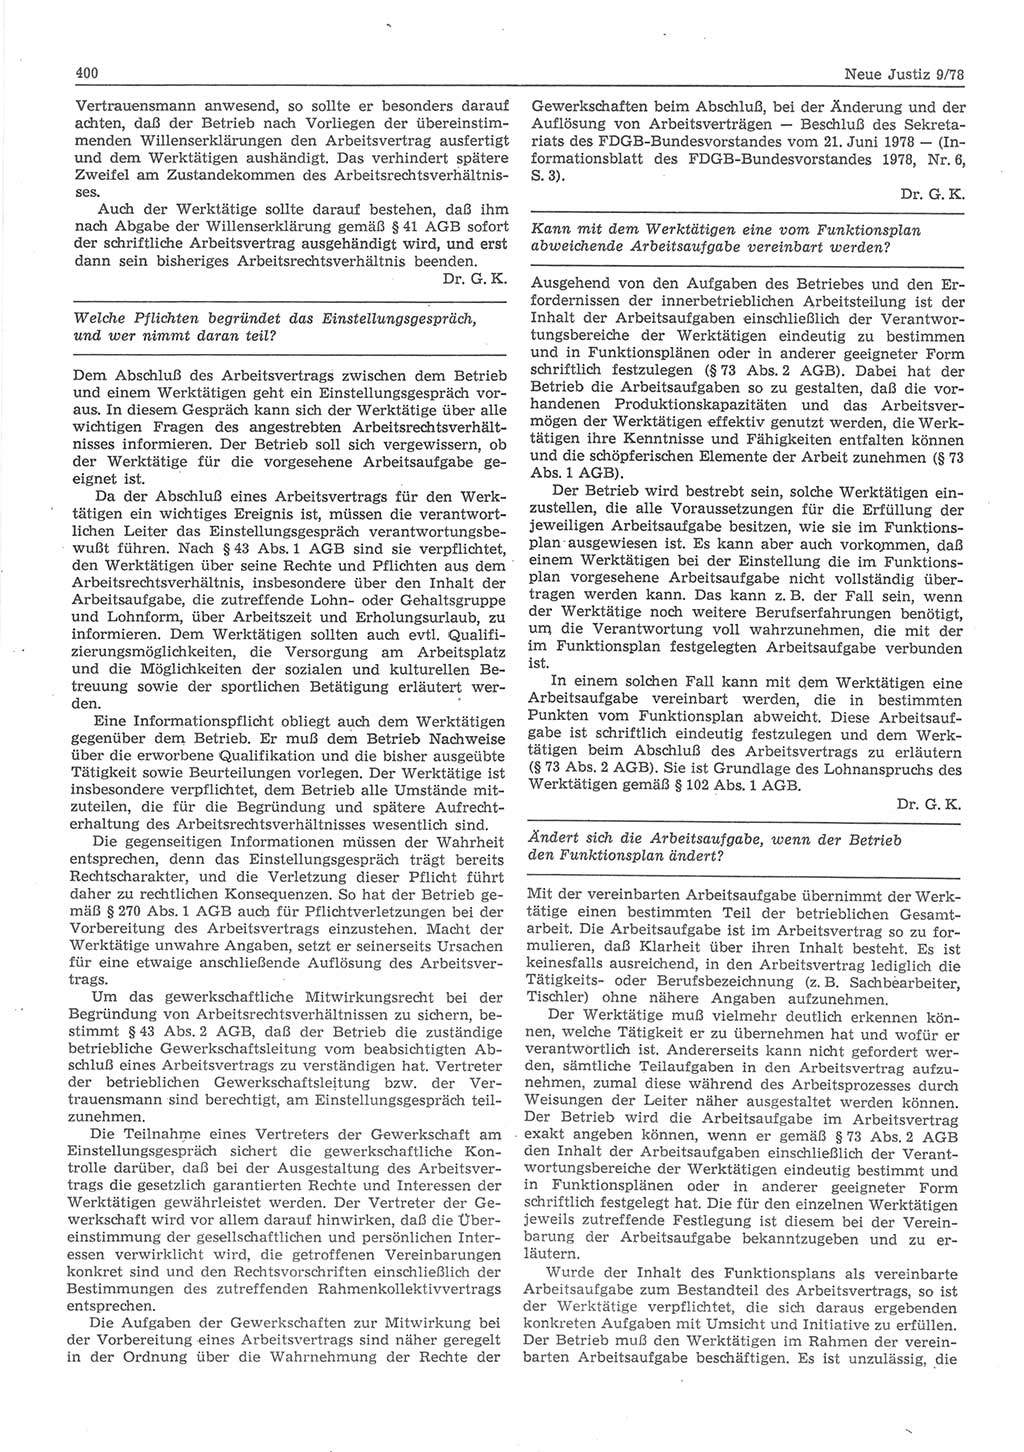 Neue Justiz (NJ), Zeitschrift für sozialistisches Recht und Gesetzlichkeit [Deutsche Demokratische Republik (DDR)], 32. Jahrgang 1978, Seite 400 (NJ DDR 1978, S. 400)